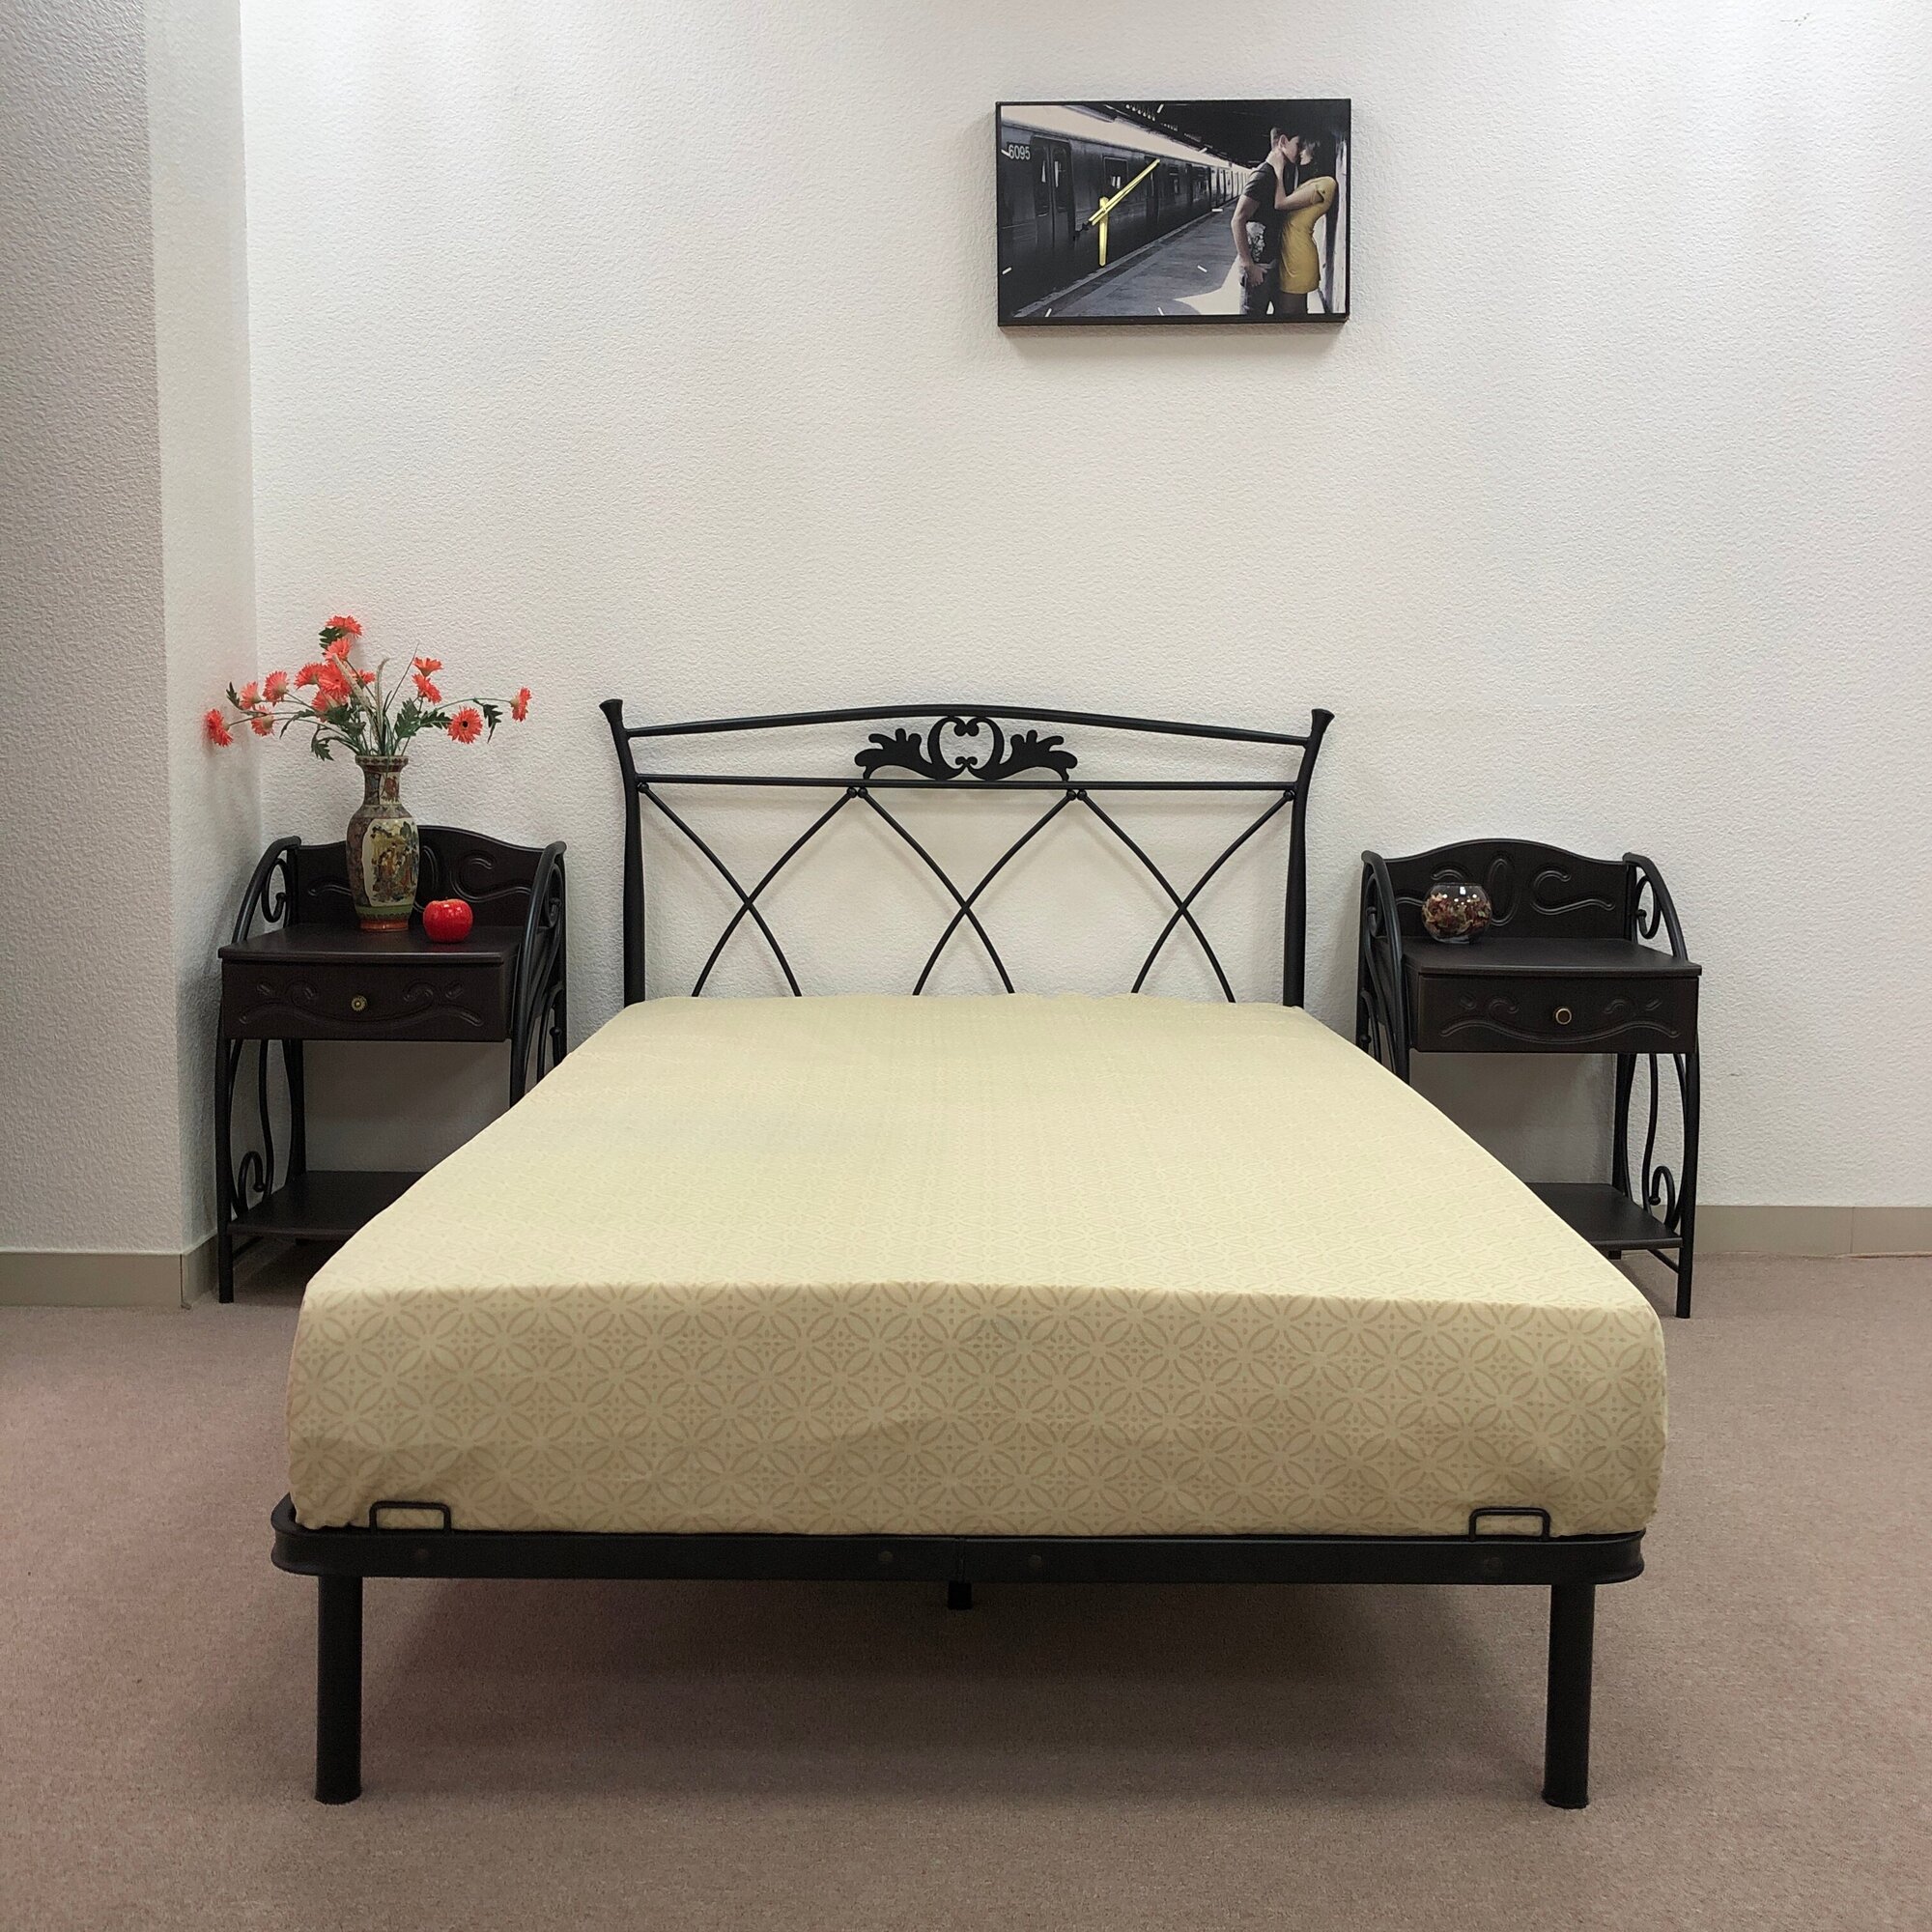 Кровать двуспальная Элеонора Поллет 120*200 см железная черная 1,2*2 метра